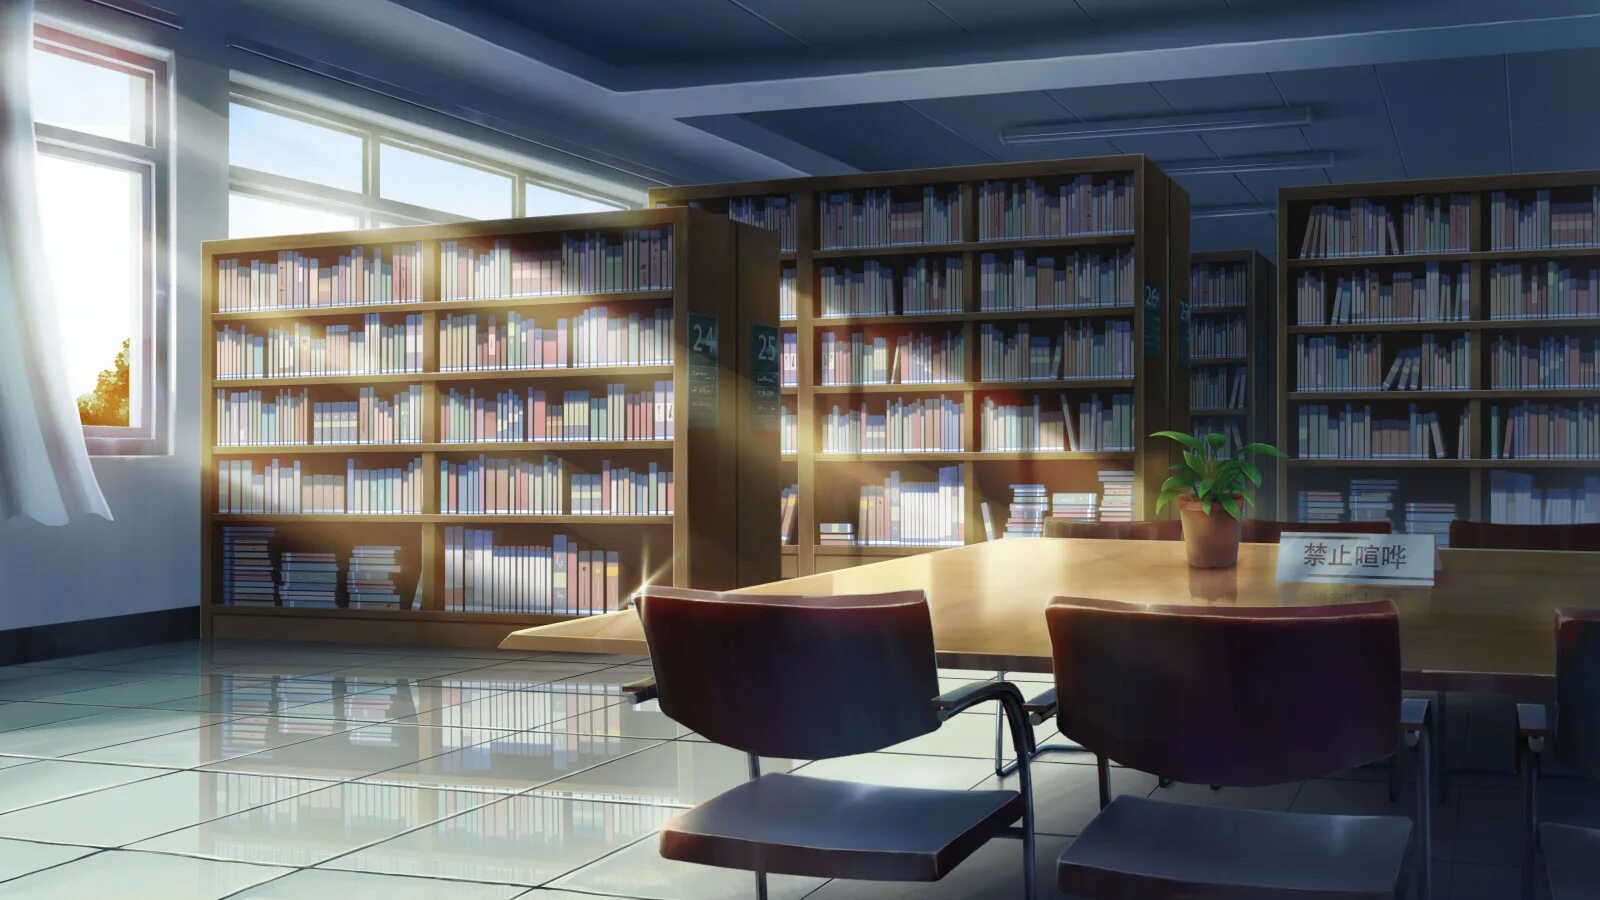 Библиотека 4 часть. Библиотека Японии читальный зал. Библиотека арт. Красивая Школьная библиотека.